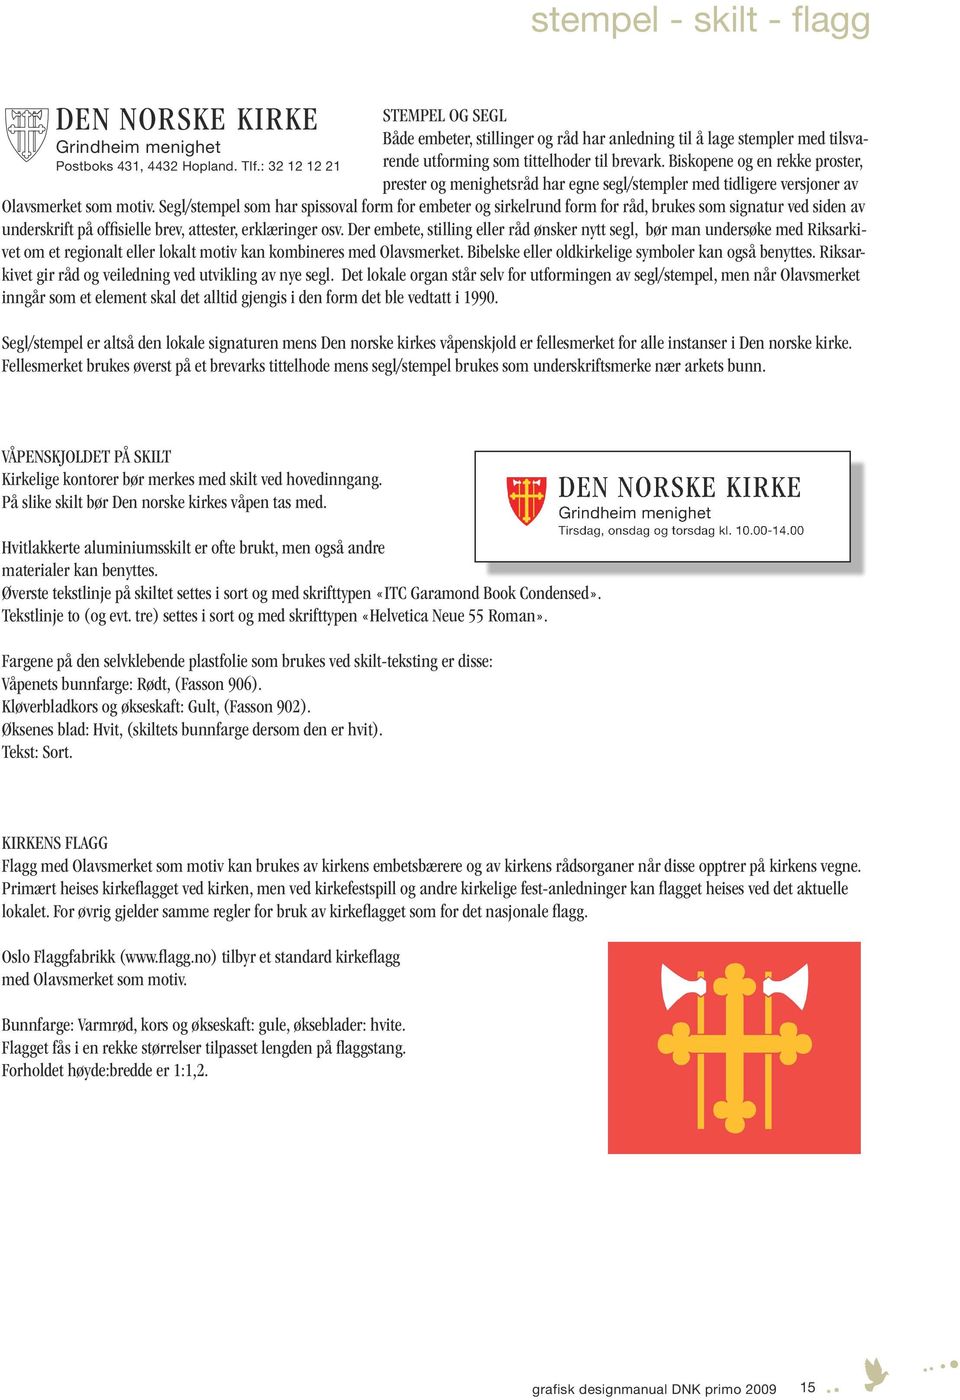 Biskopene og en rekke proster, prester og menighetsråd har egne segl/stempler med tidligere versjoner av Olavsmerket som motiv.